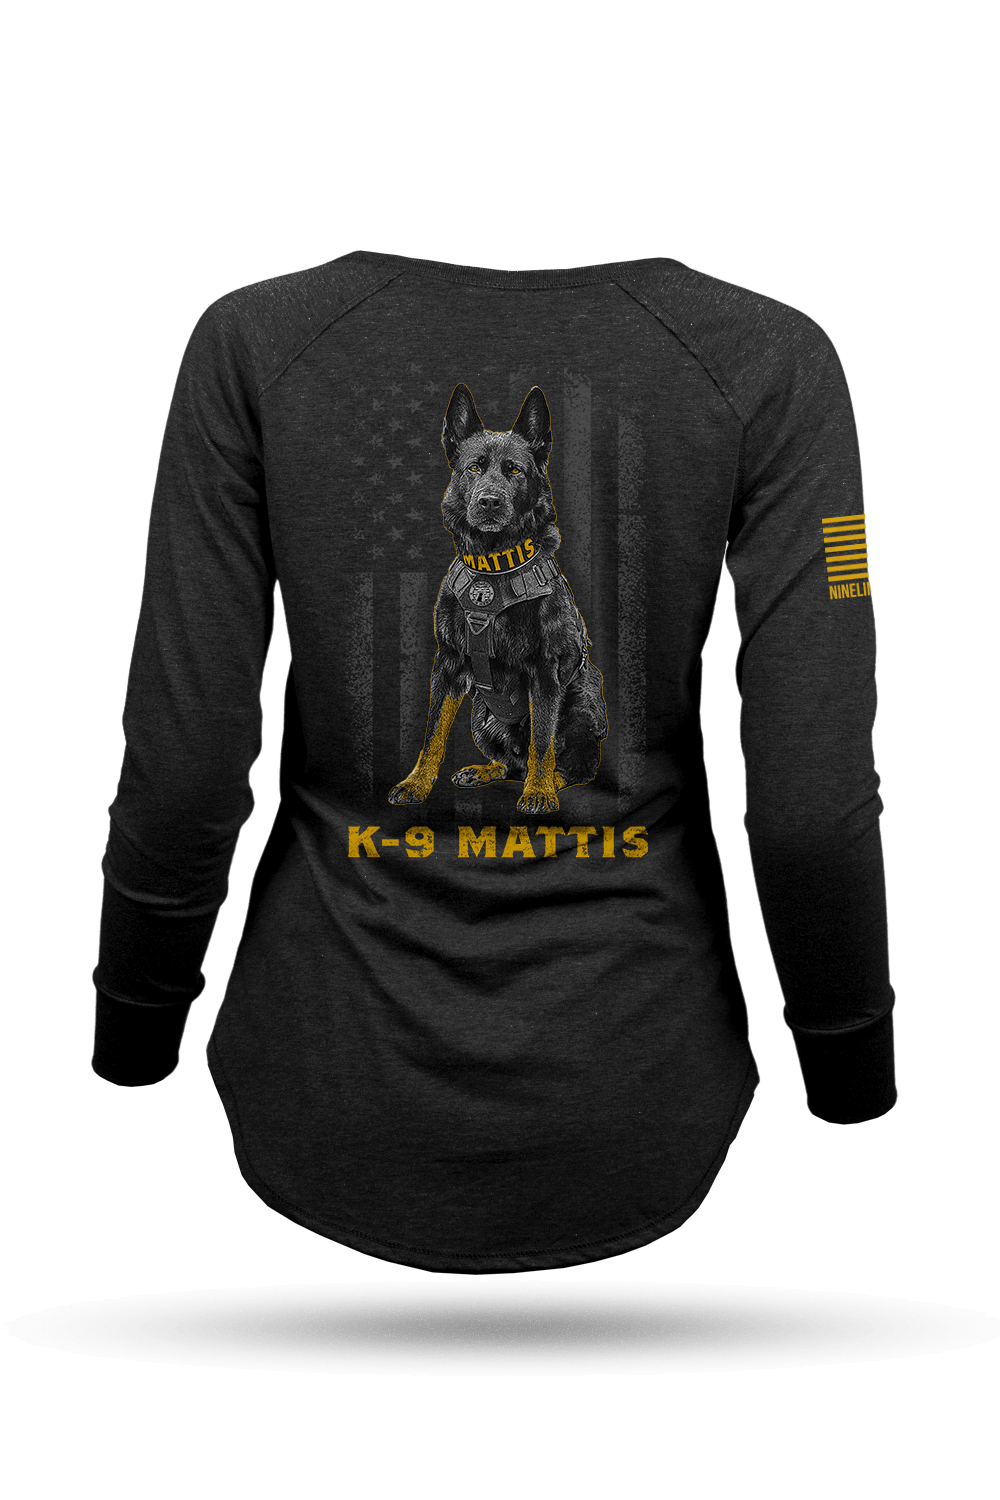 Women's Long-Sleeve Shirt - Project K-9 Hero K-9 Mattis